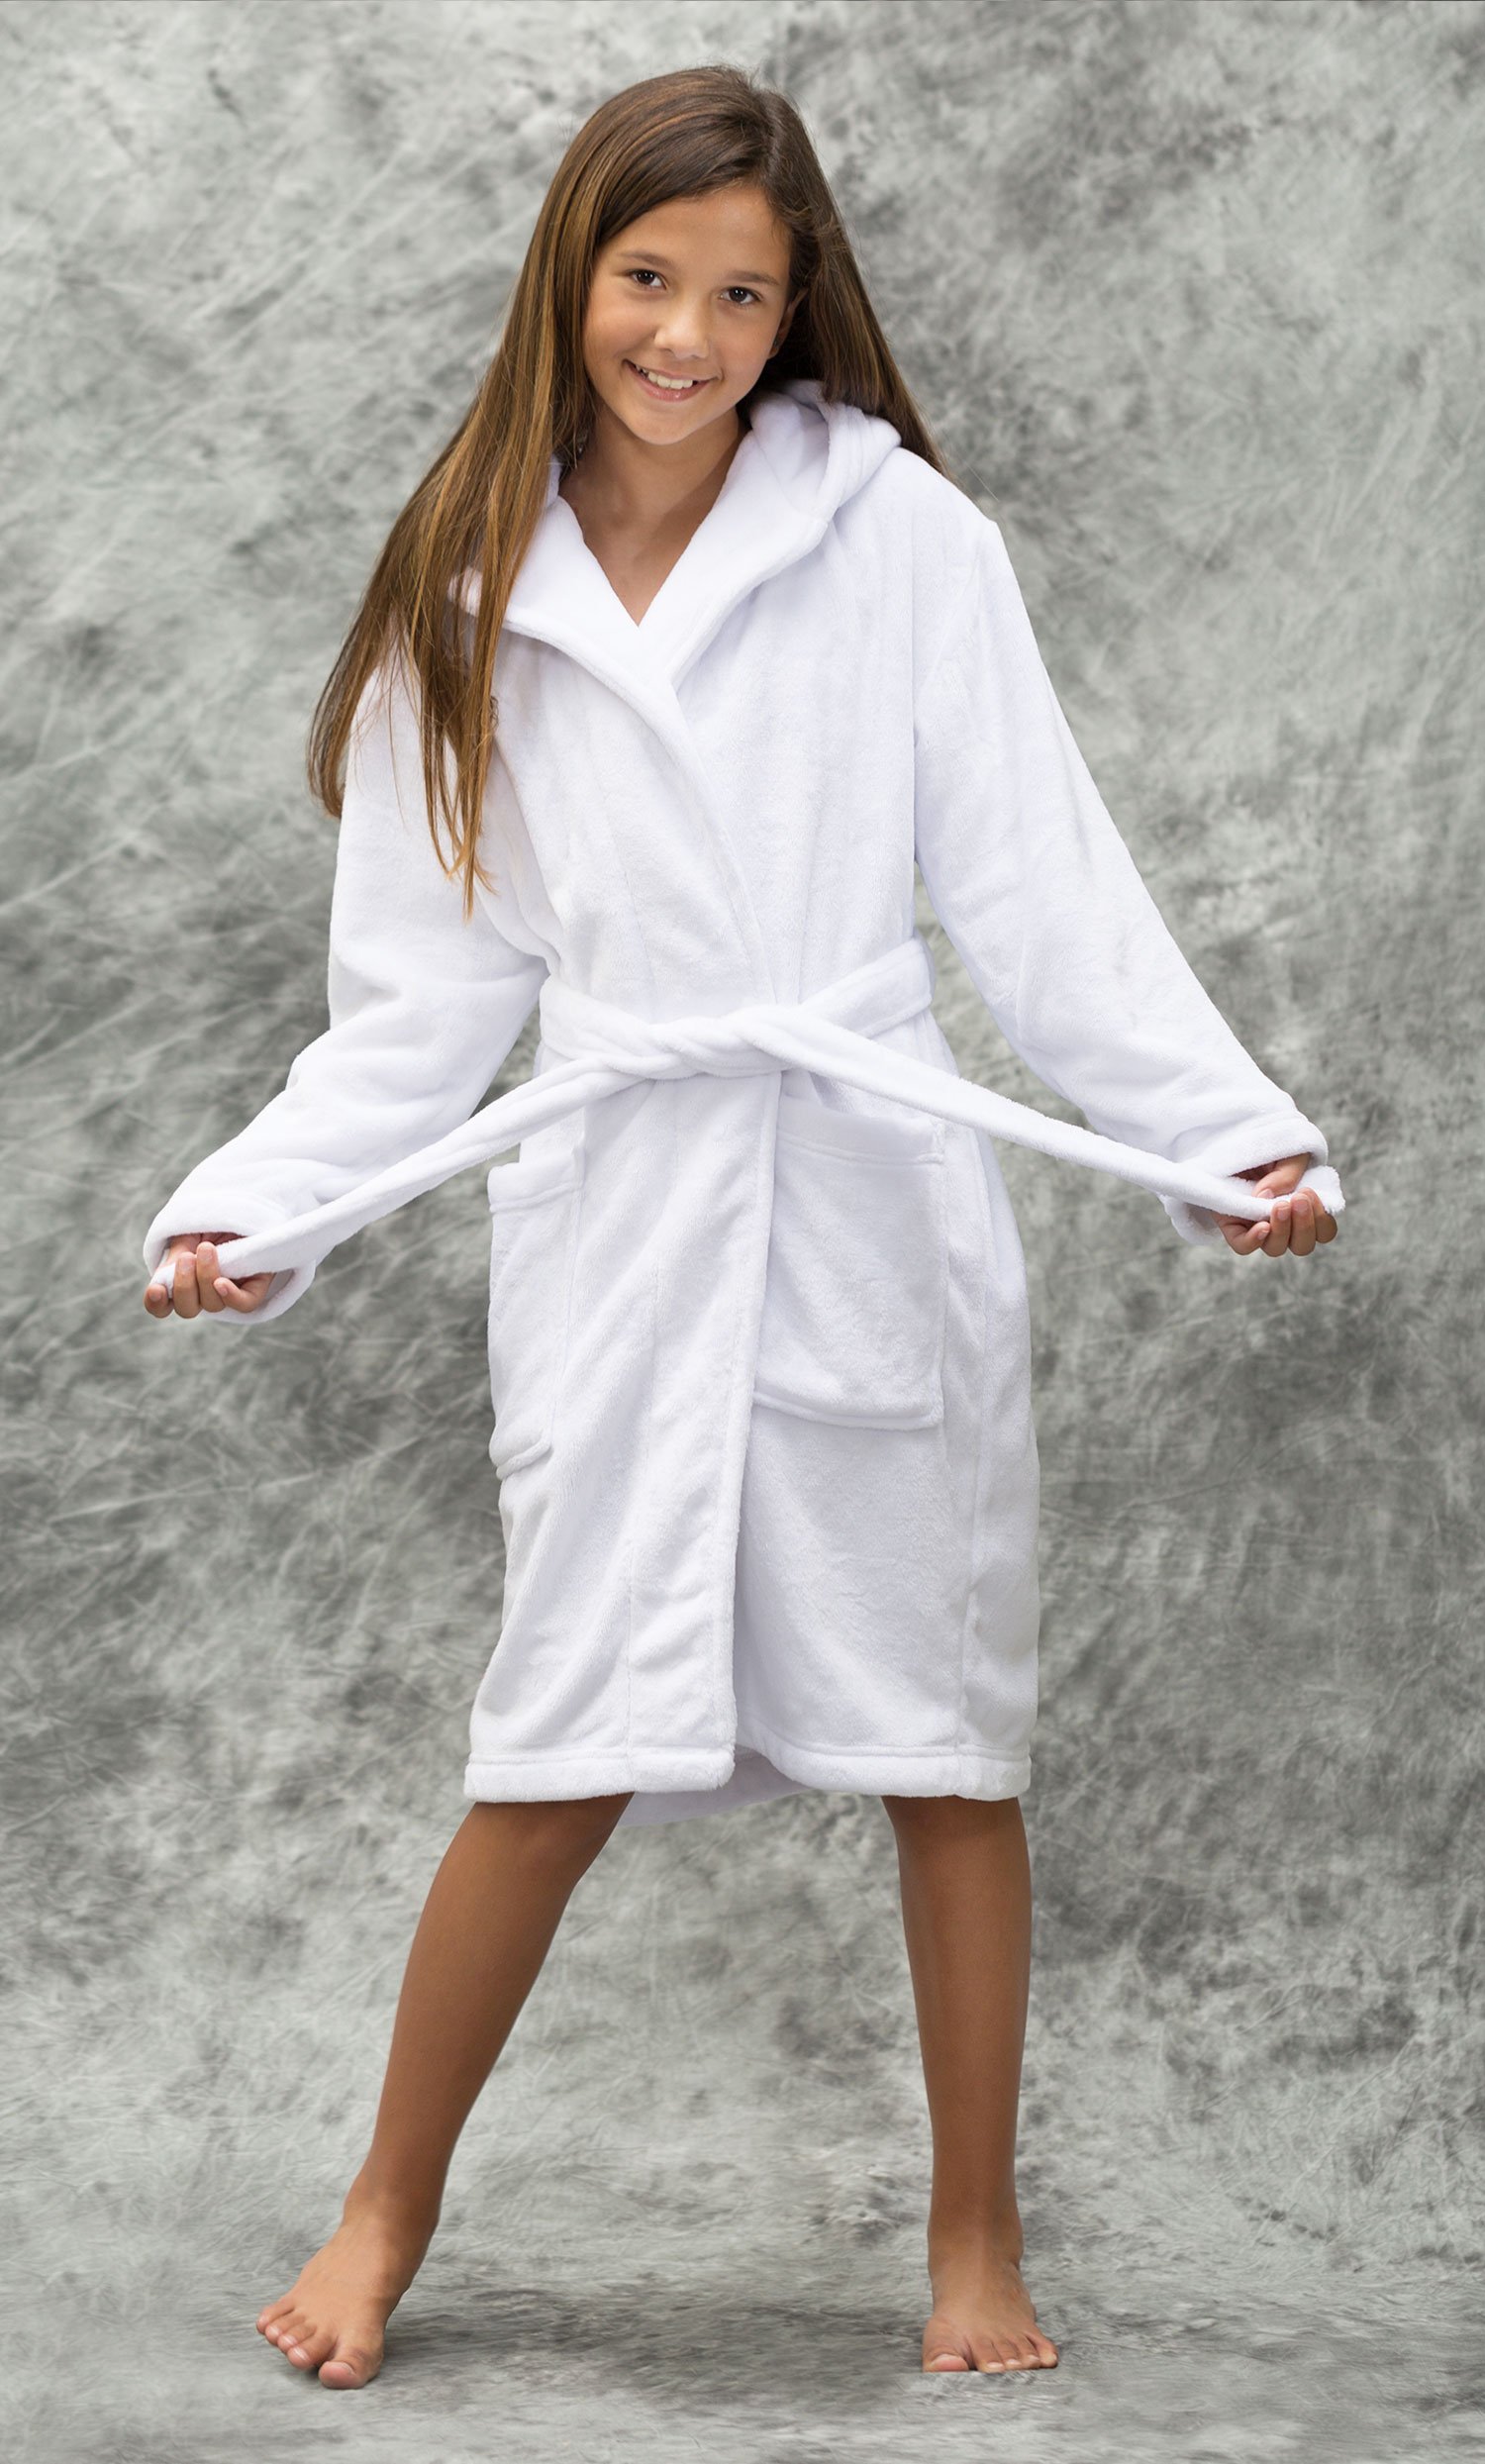 Little Girls White Robes